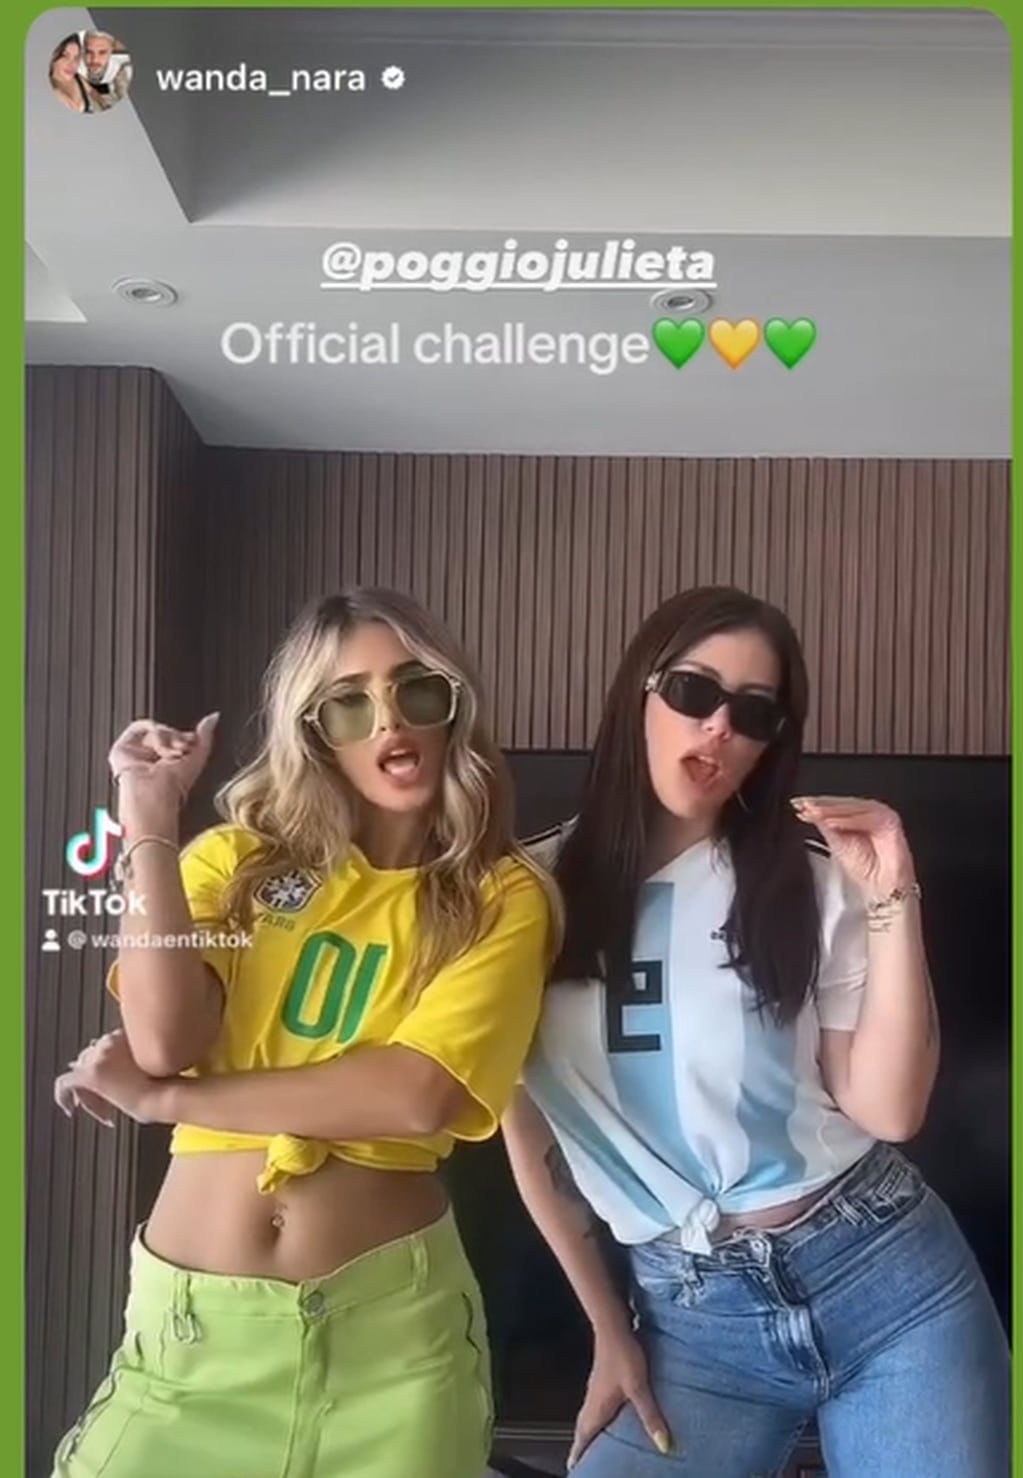 Wanda Nara y Julieta Poggio paralizaron Instagram con un baile cargado de sensualidad